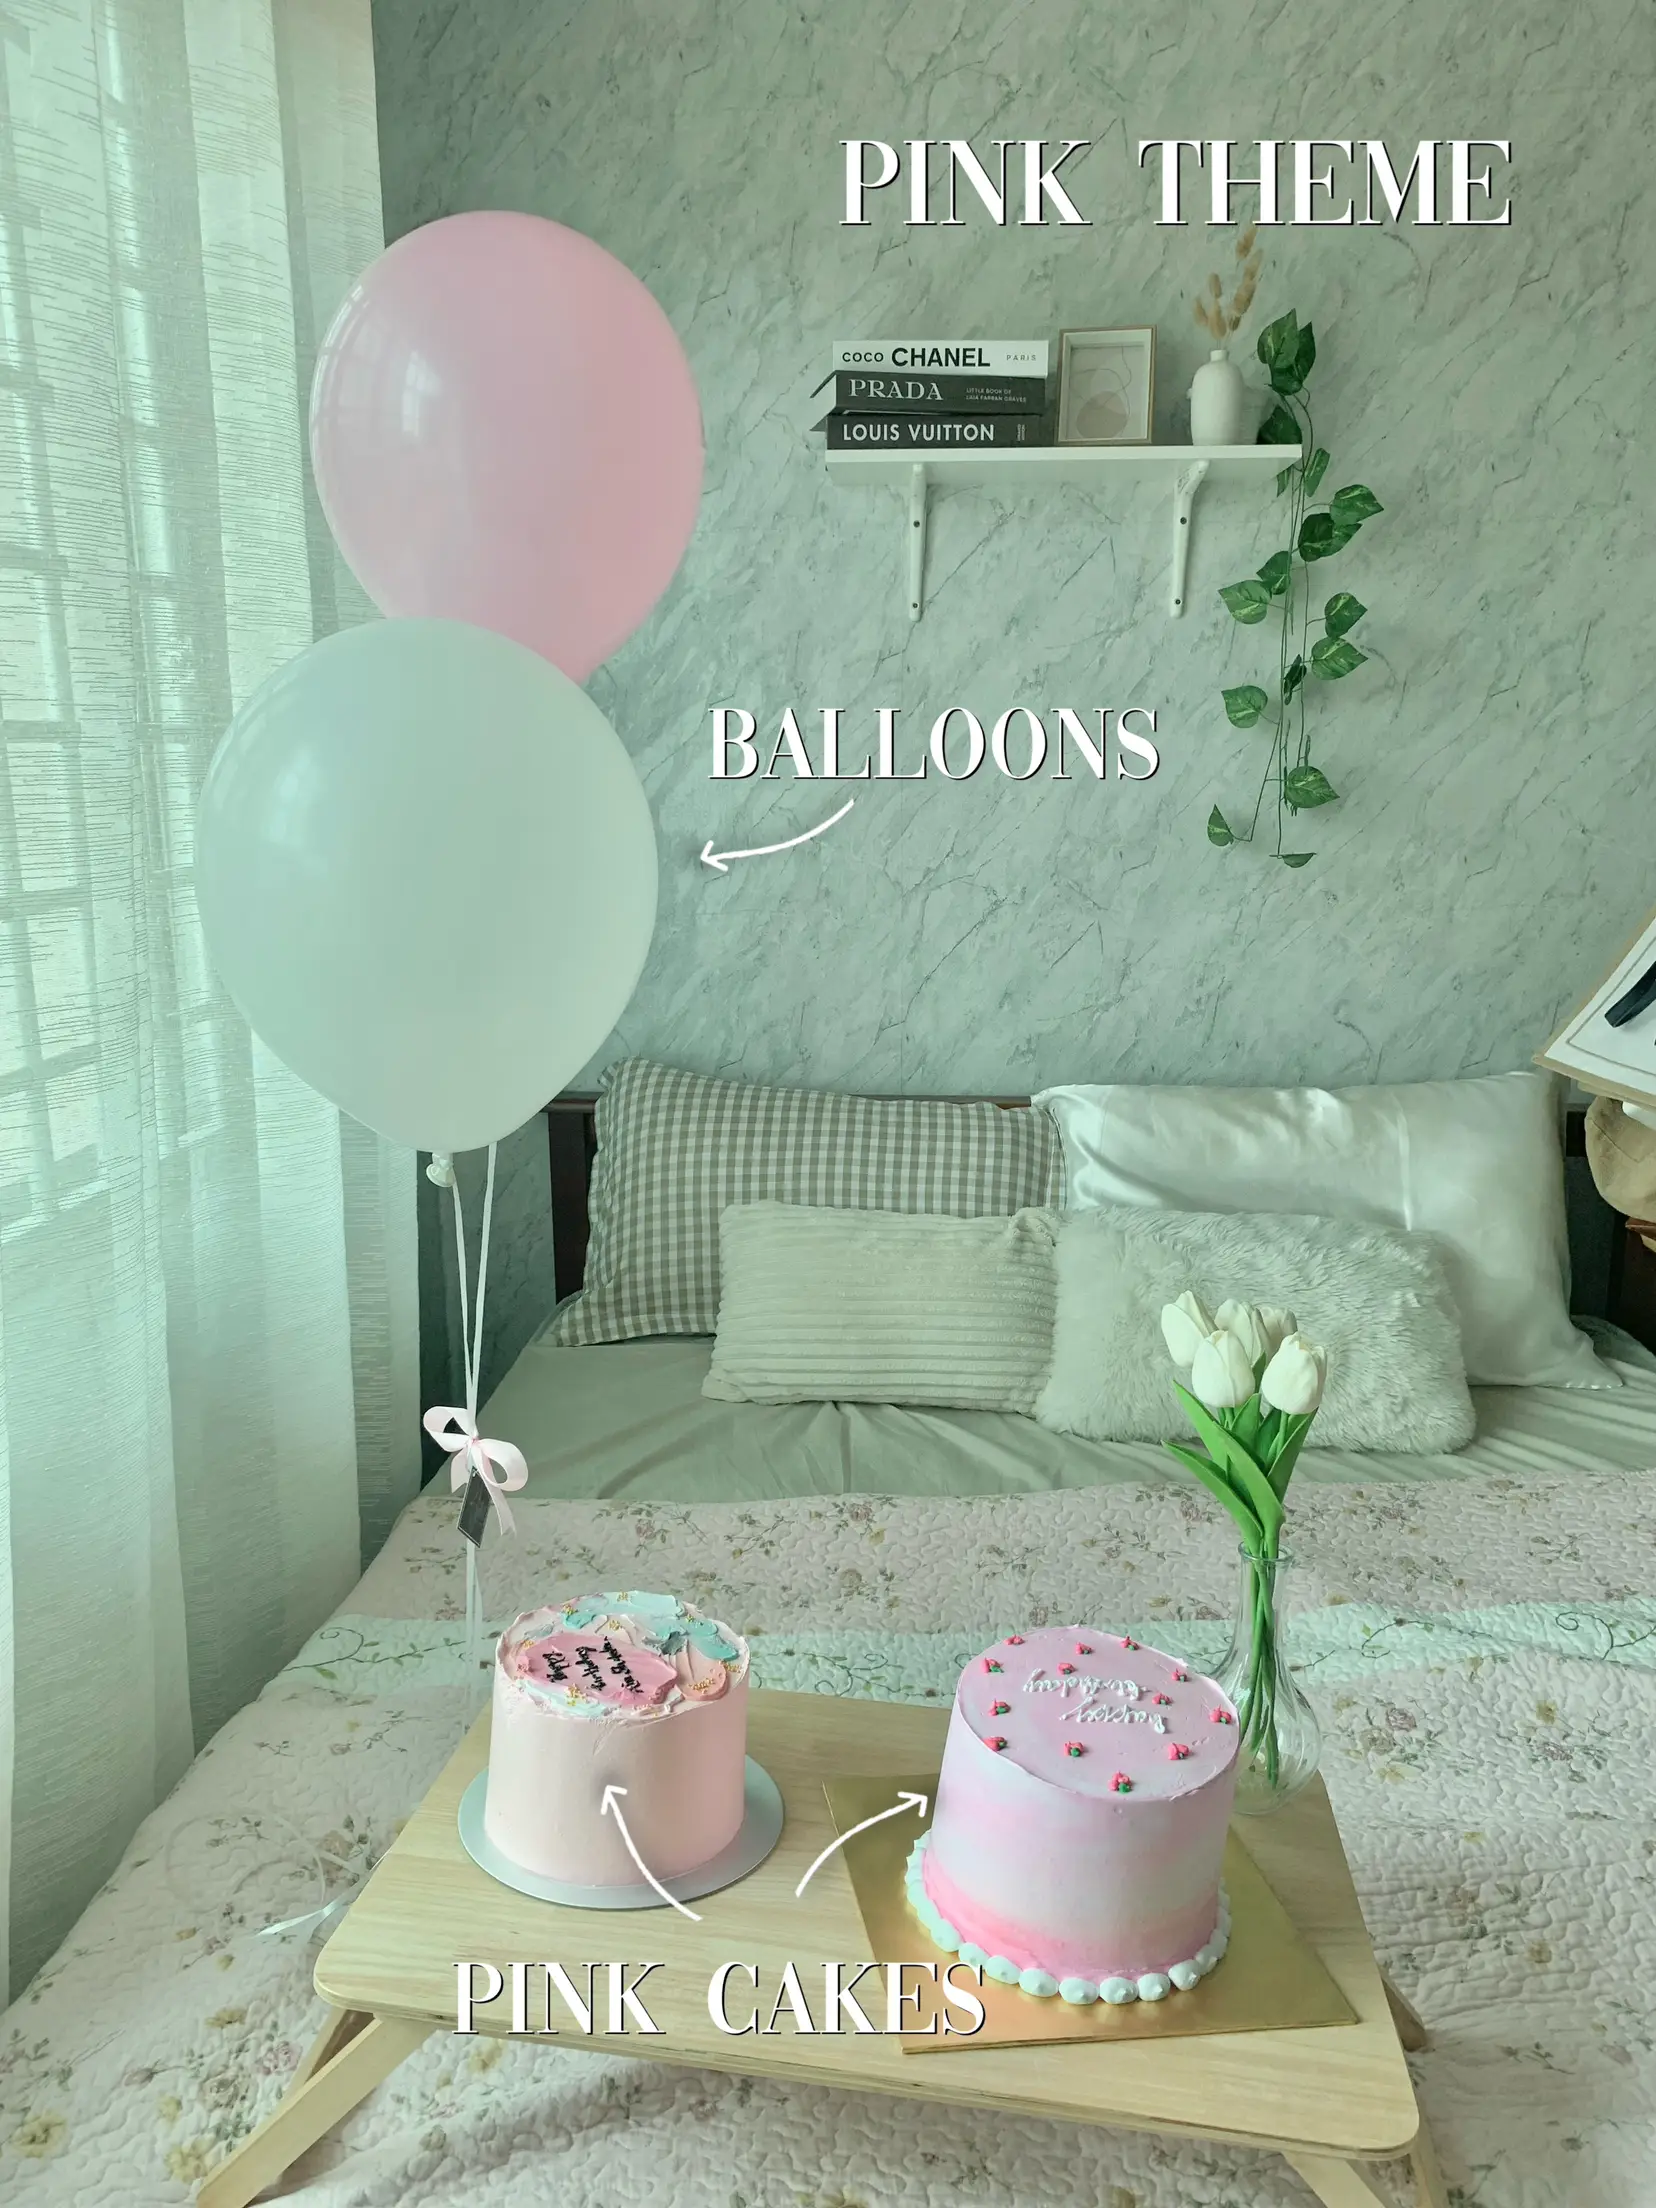 Louis Vuitton Birthday Party Ideas, Photo 20 of 26